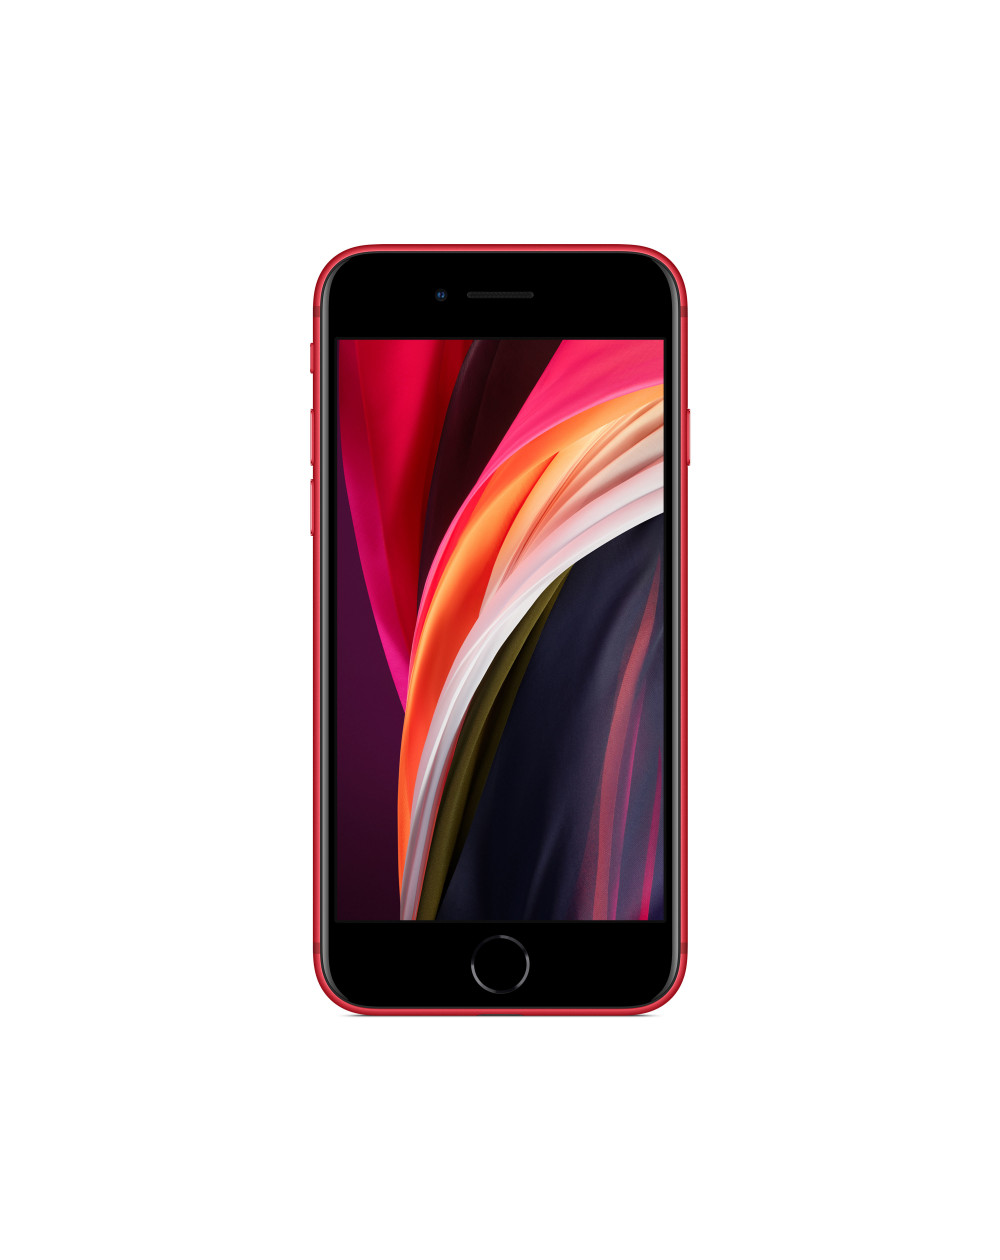 iPhone SE 64GB (PRODUCT)RED - Prodotto rigenerato di grado B